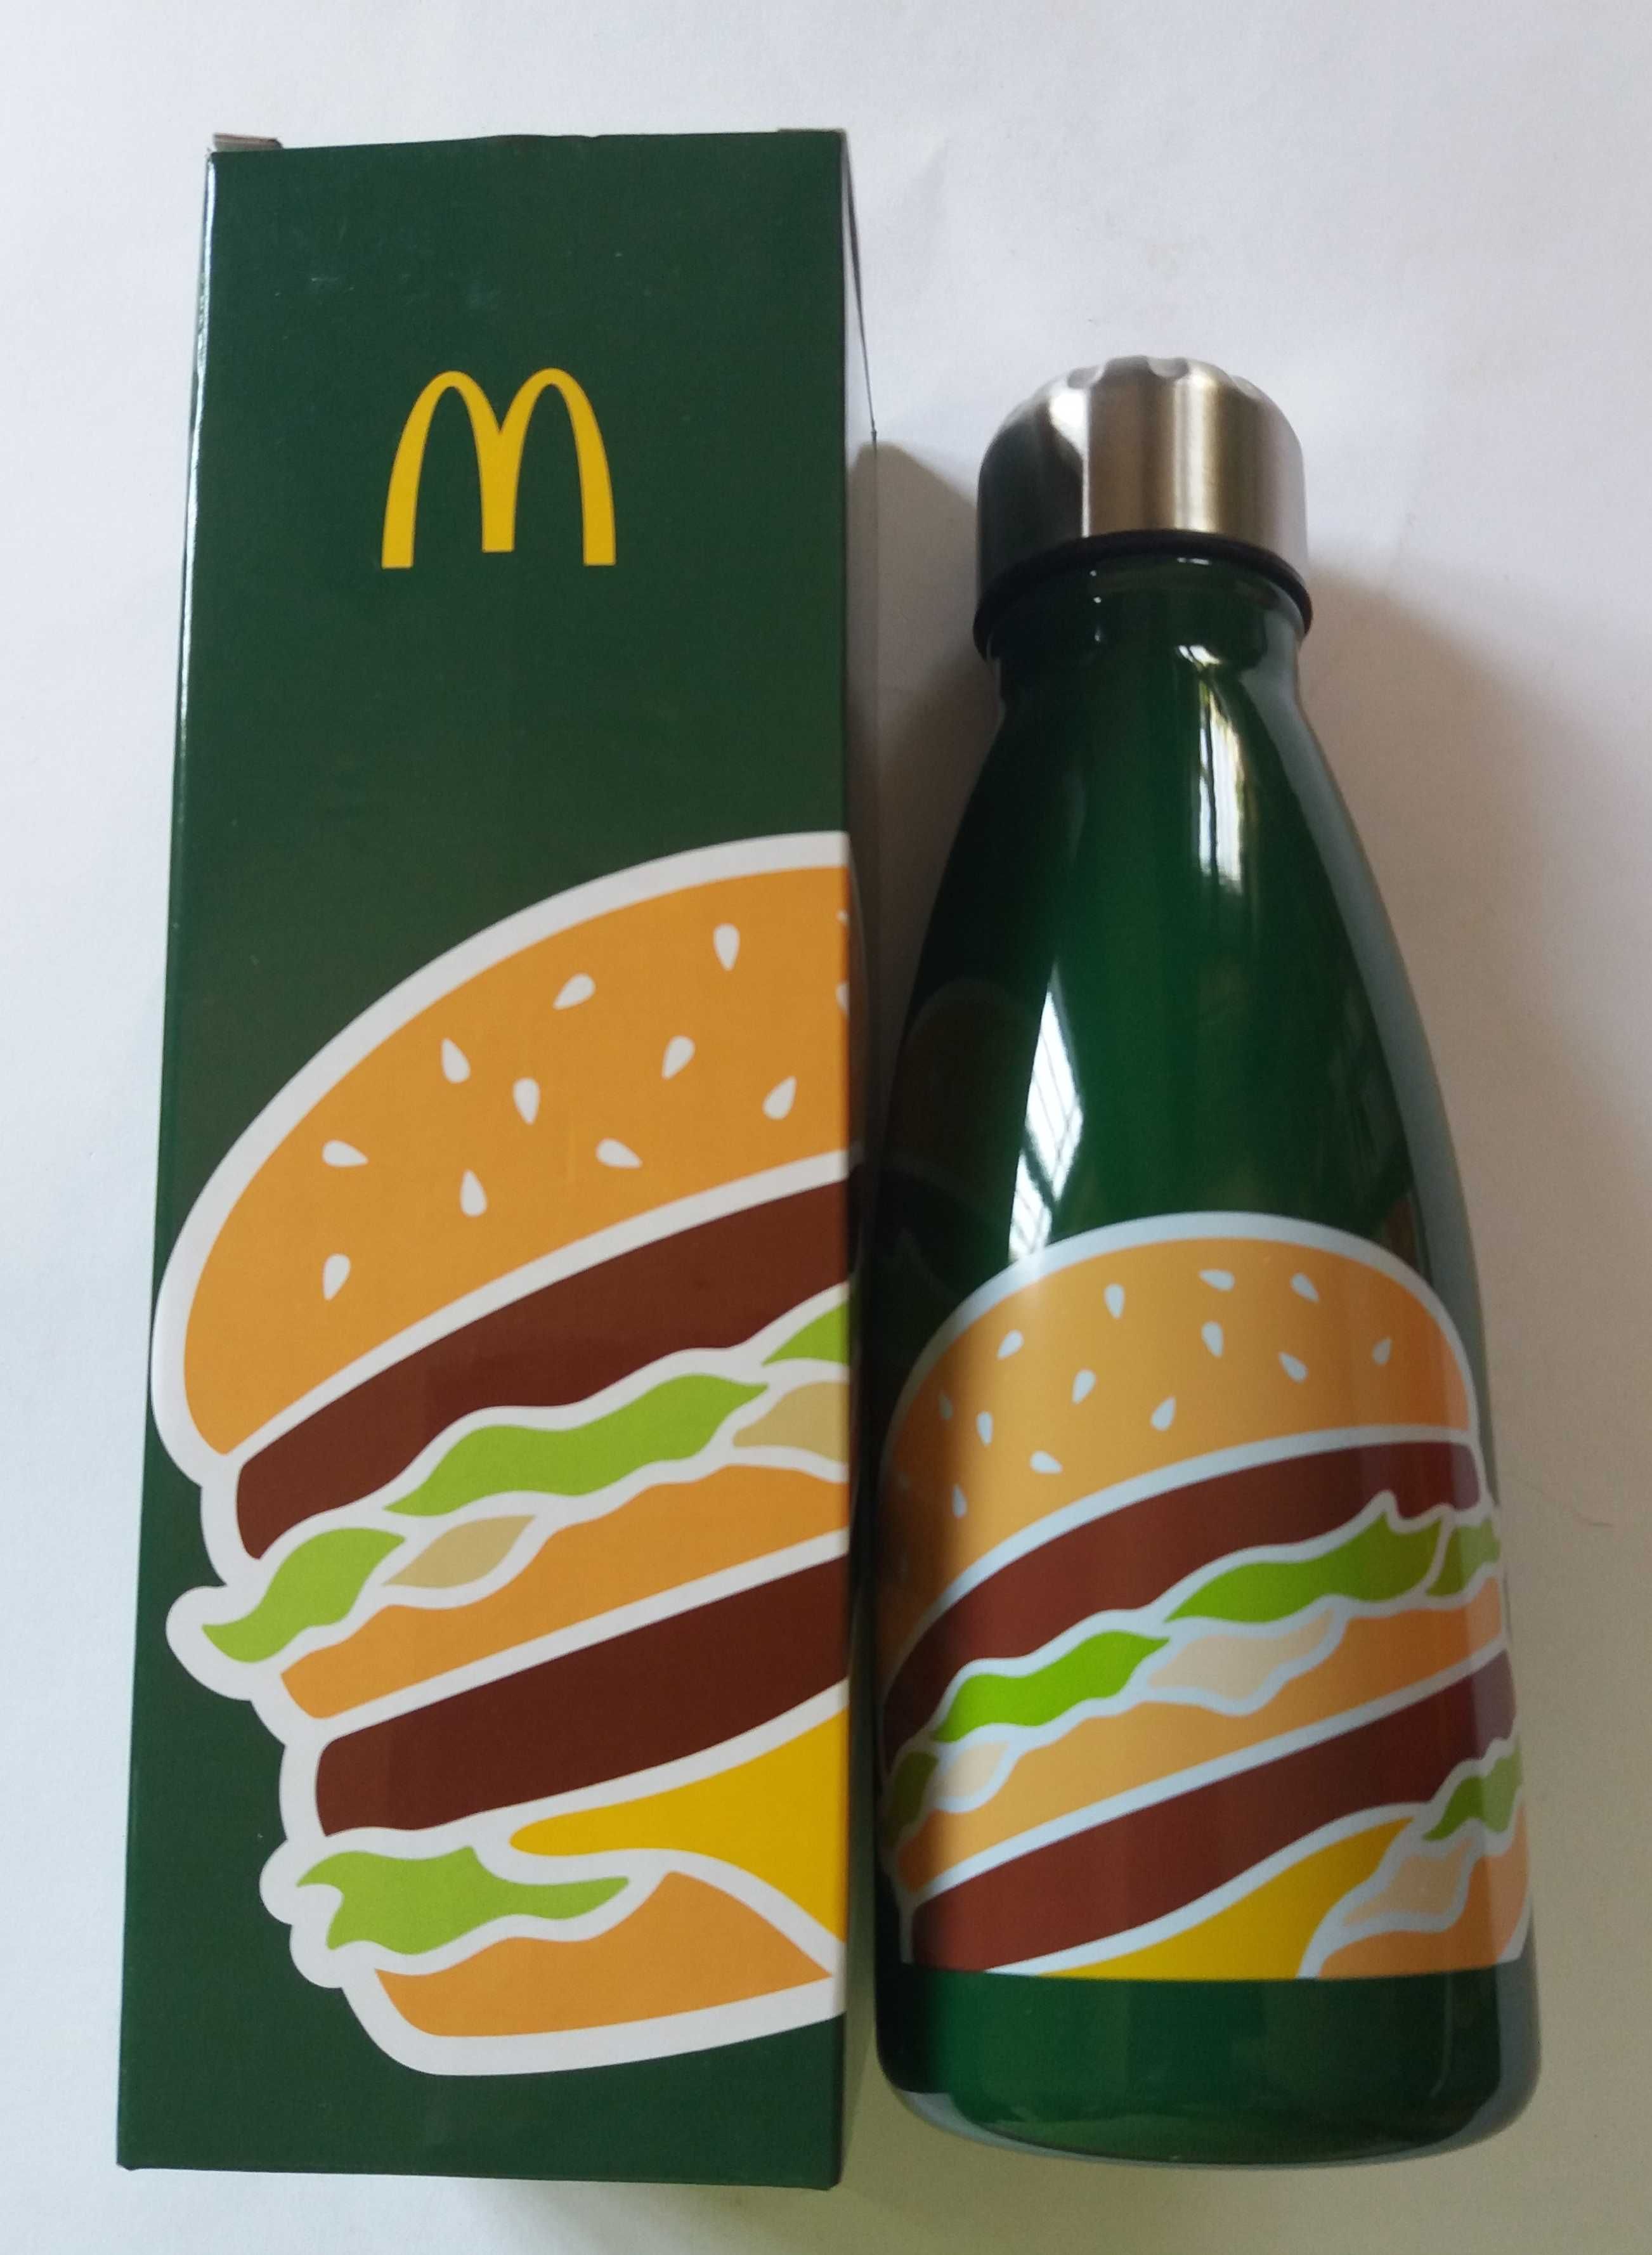 Novo preço-McDonald’s 30 ano ofi garrafa aço inoxidável 550ml- 5€ c/